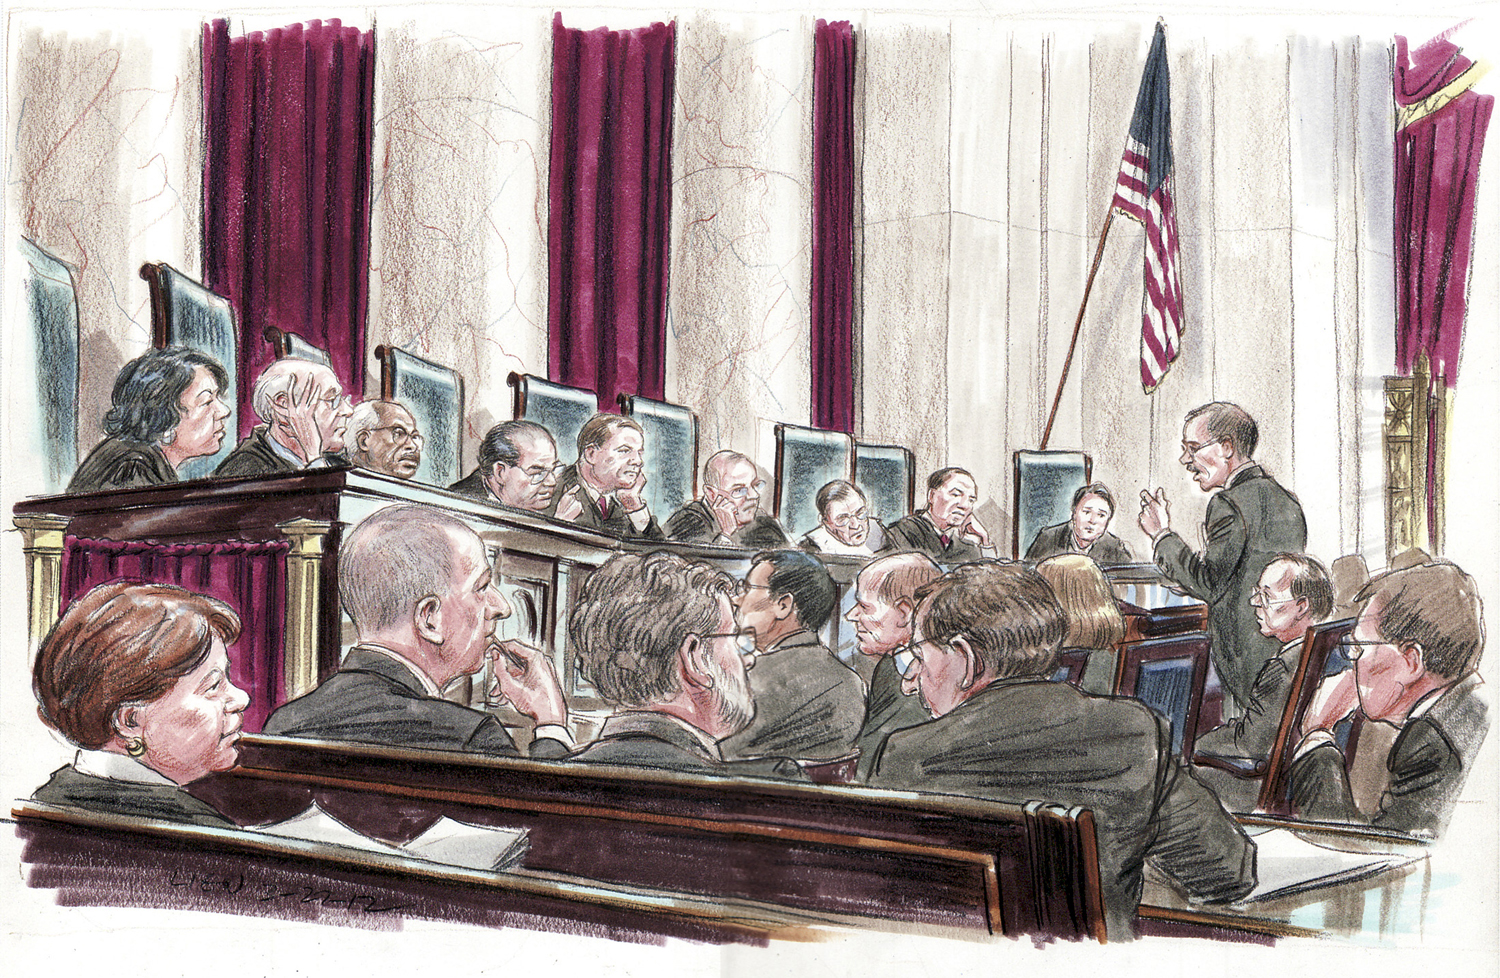 Bírósági rajz az amerikai legfelső bíróság tárgyalásáról: Donald Verrilli, az Obama-kormányzat hivatalos képviselője ismerteti álláspontját az egészségügyi törvényről a kilenc bírónak